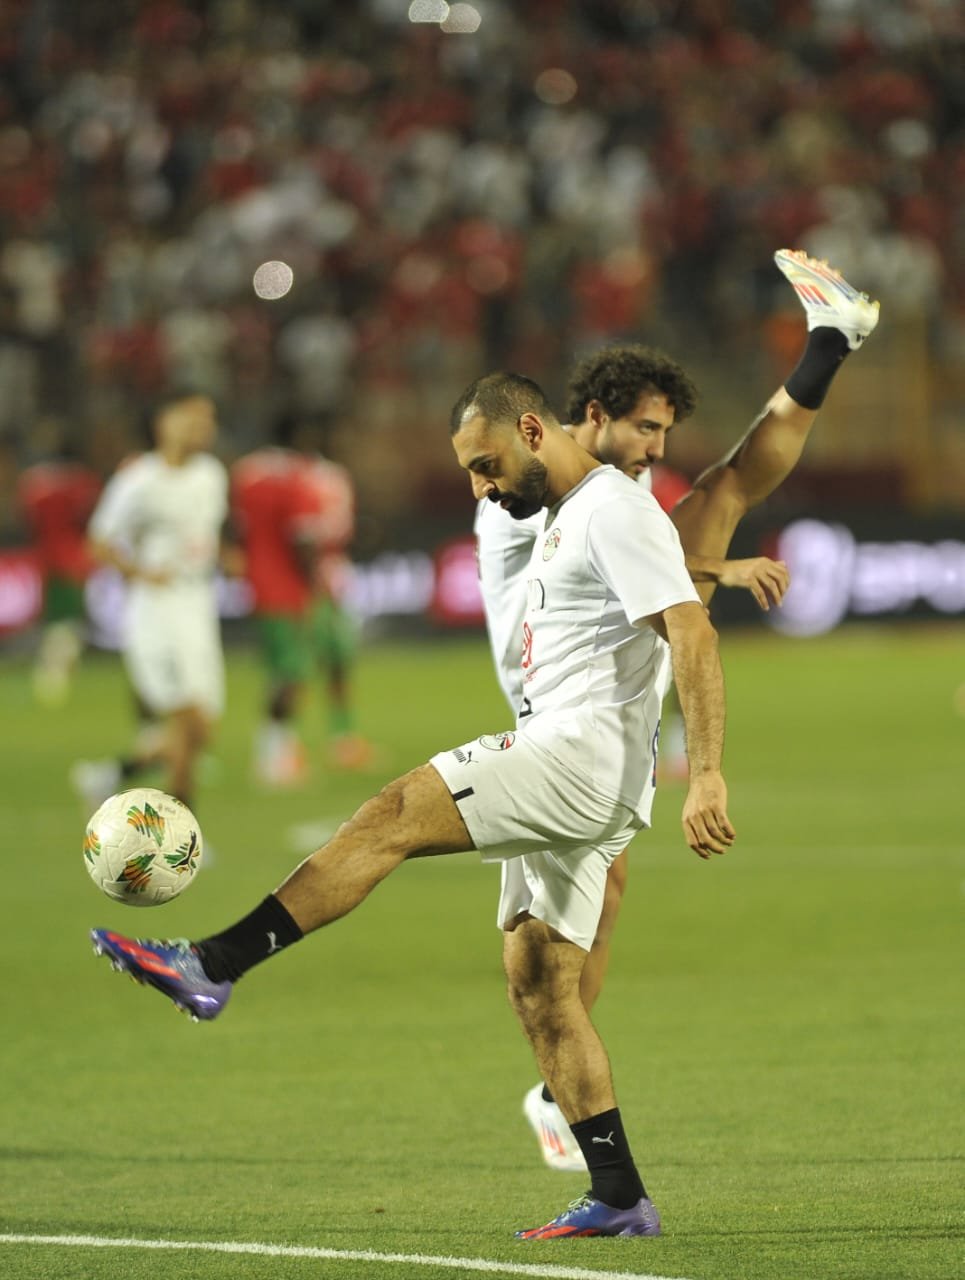 مباراة منتخب مصر وبوركينا فاسو ضمن التصفيات المؤهلة لكأس العالم2026 